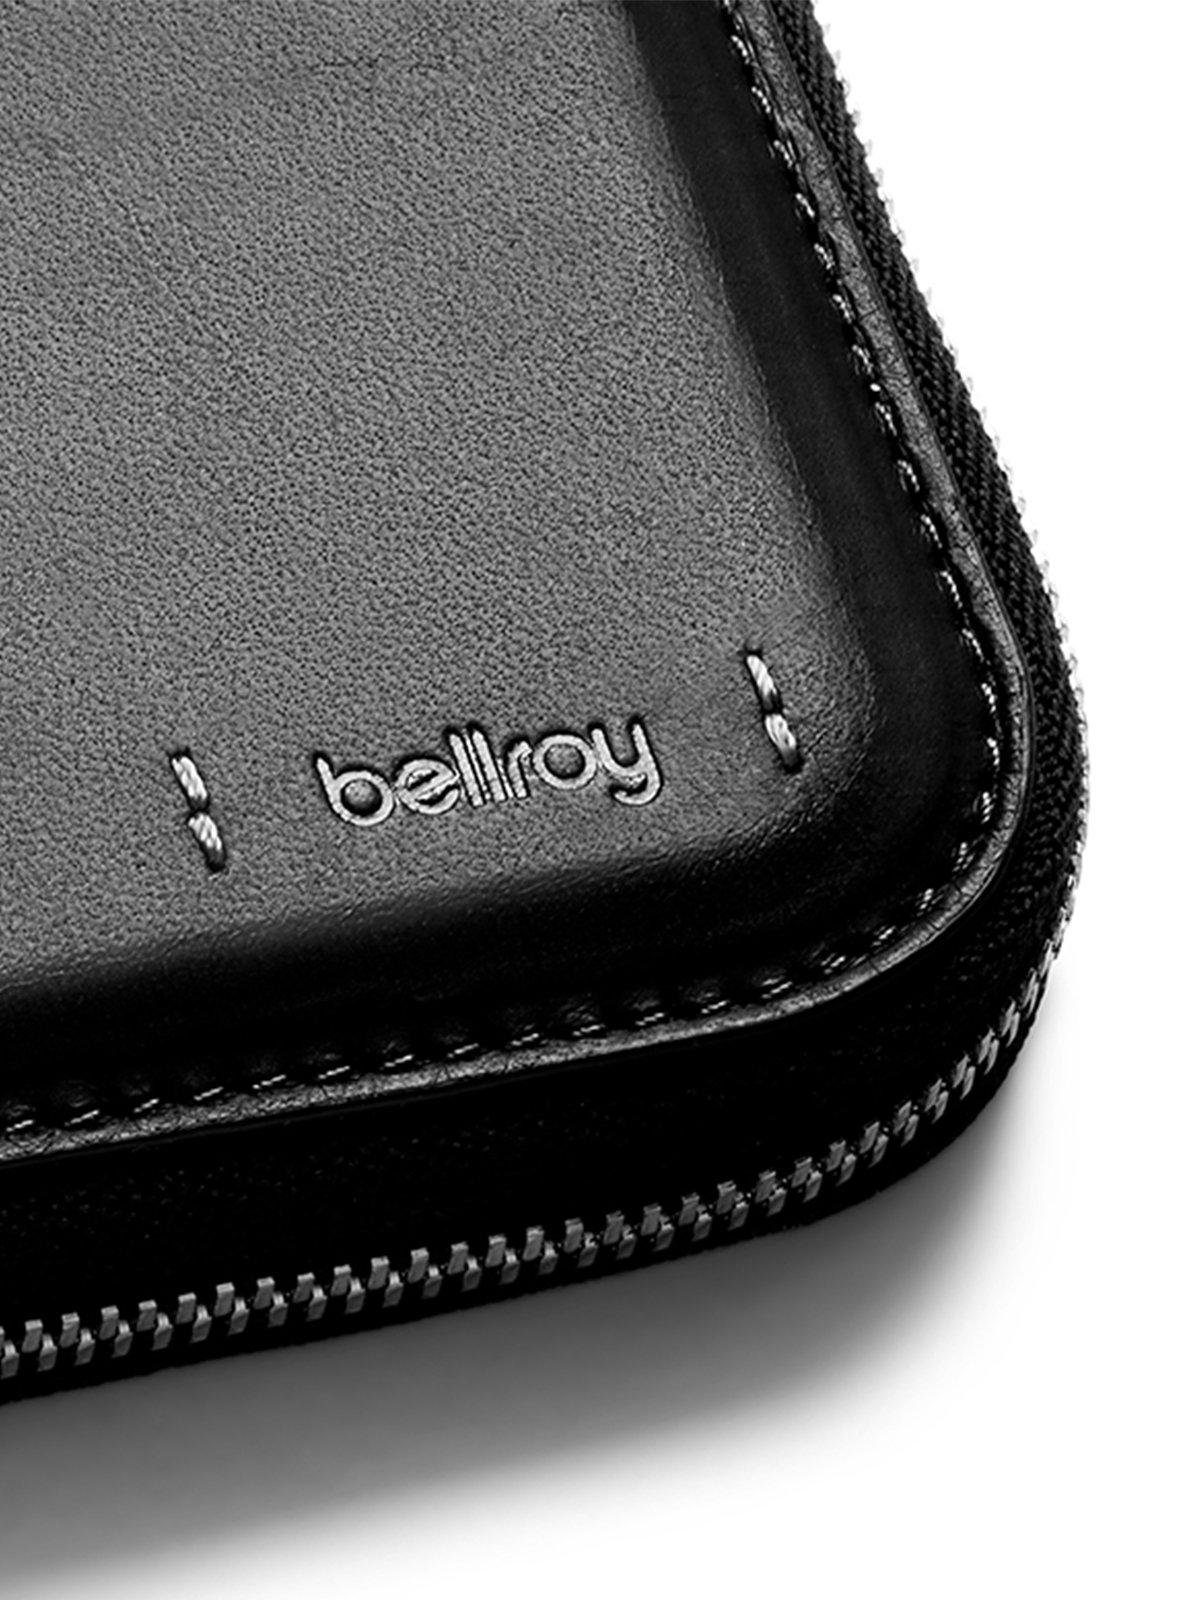 Bellroy Zip Wallet Premium Edition Black RFID